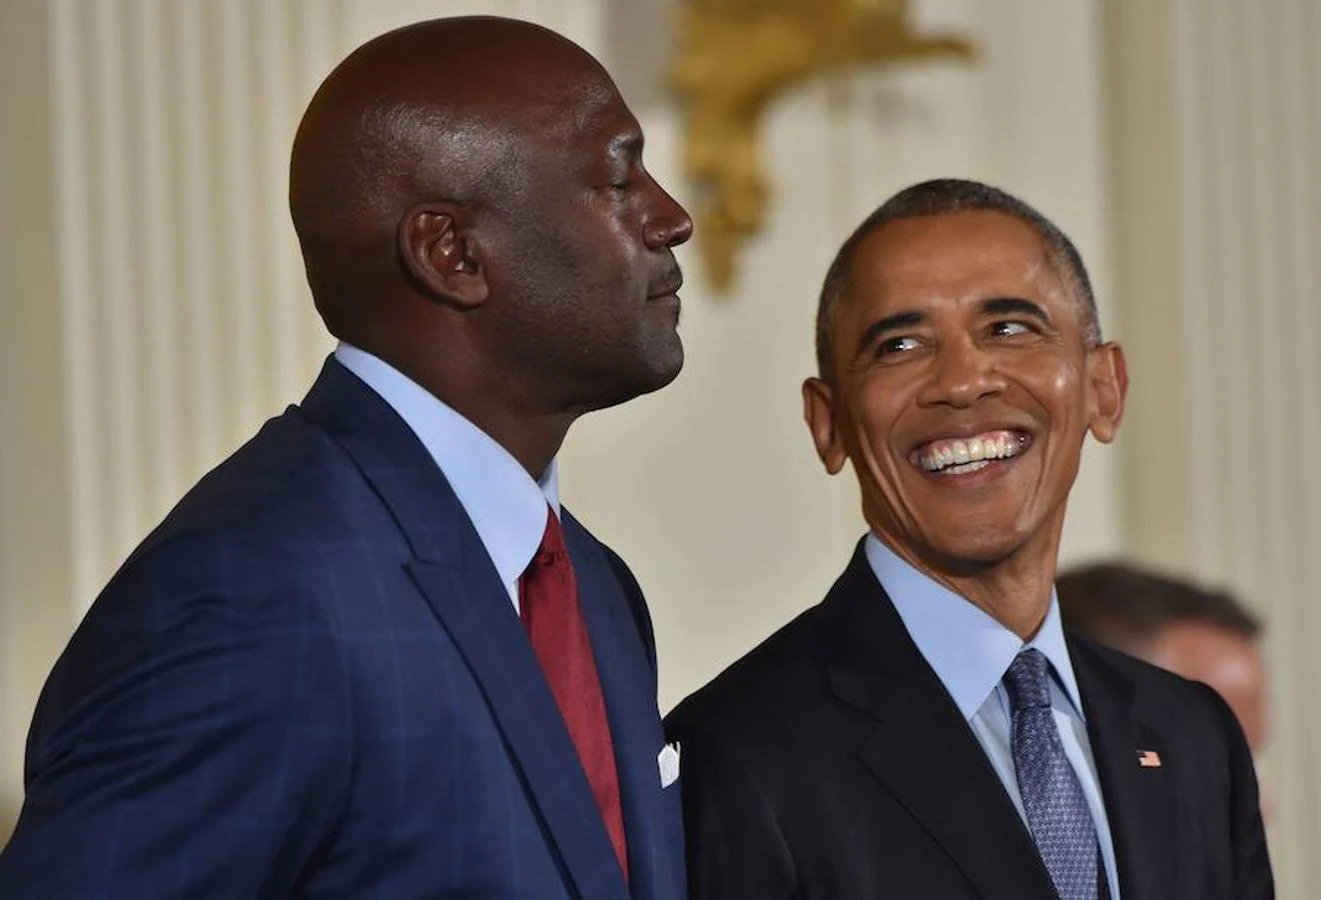 El jugador de baloncesto Michael Jordan, junto a Barack Obama 